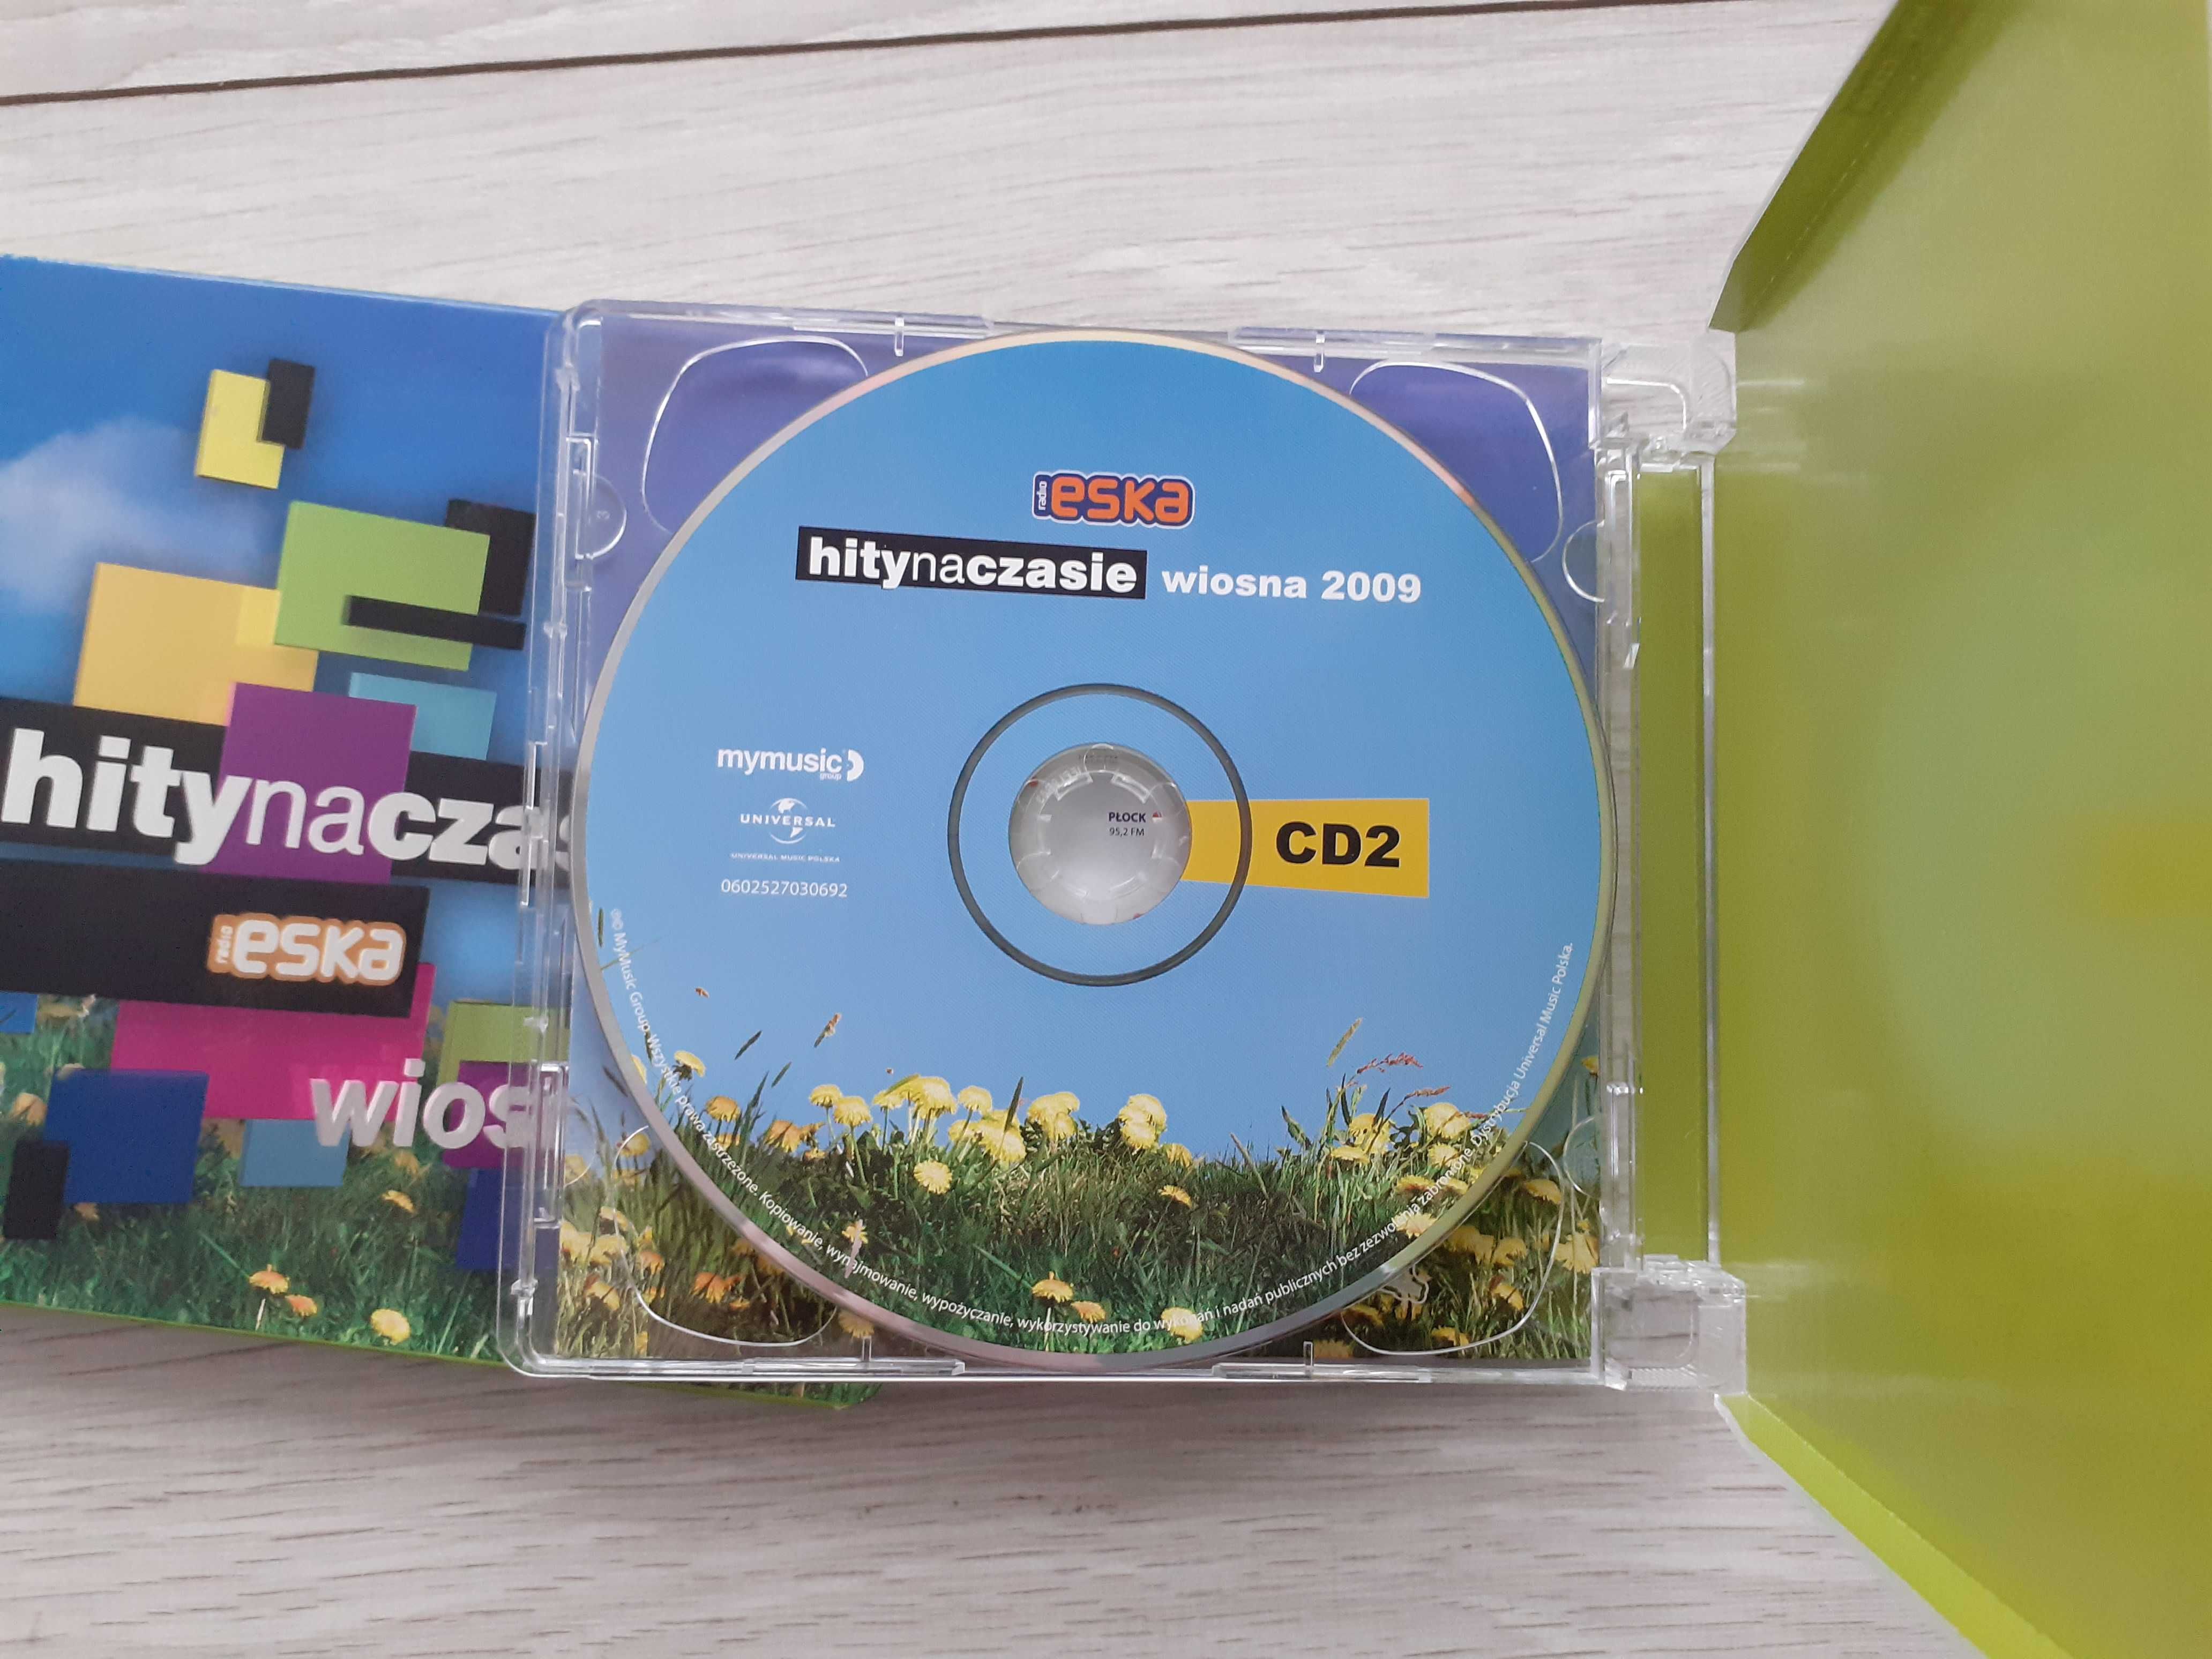 Eska Hity na czasie wiosna 2009 - 2 x CD